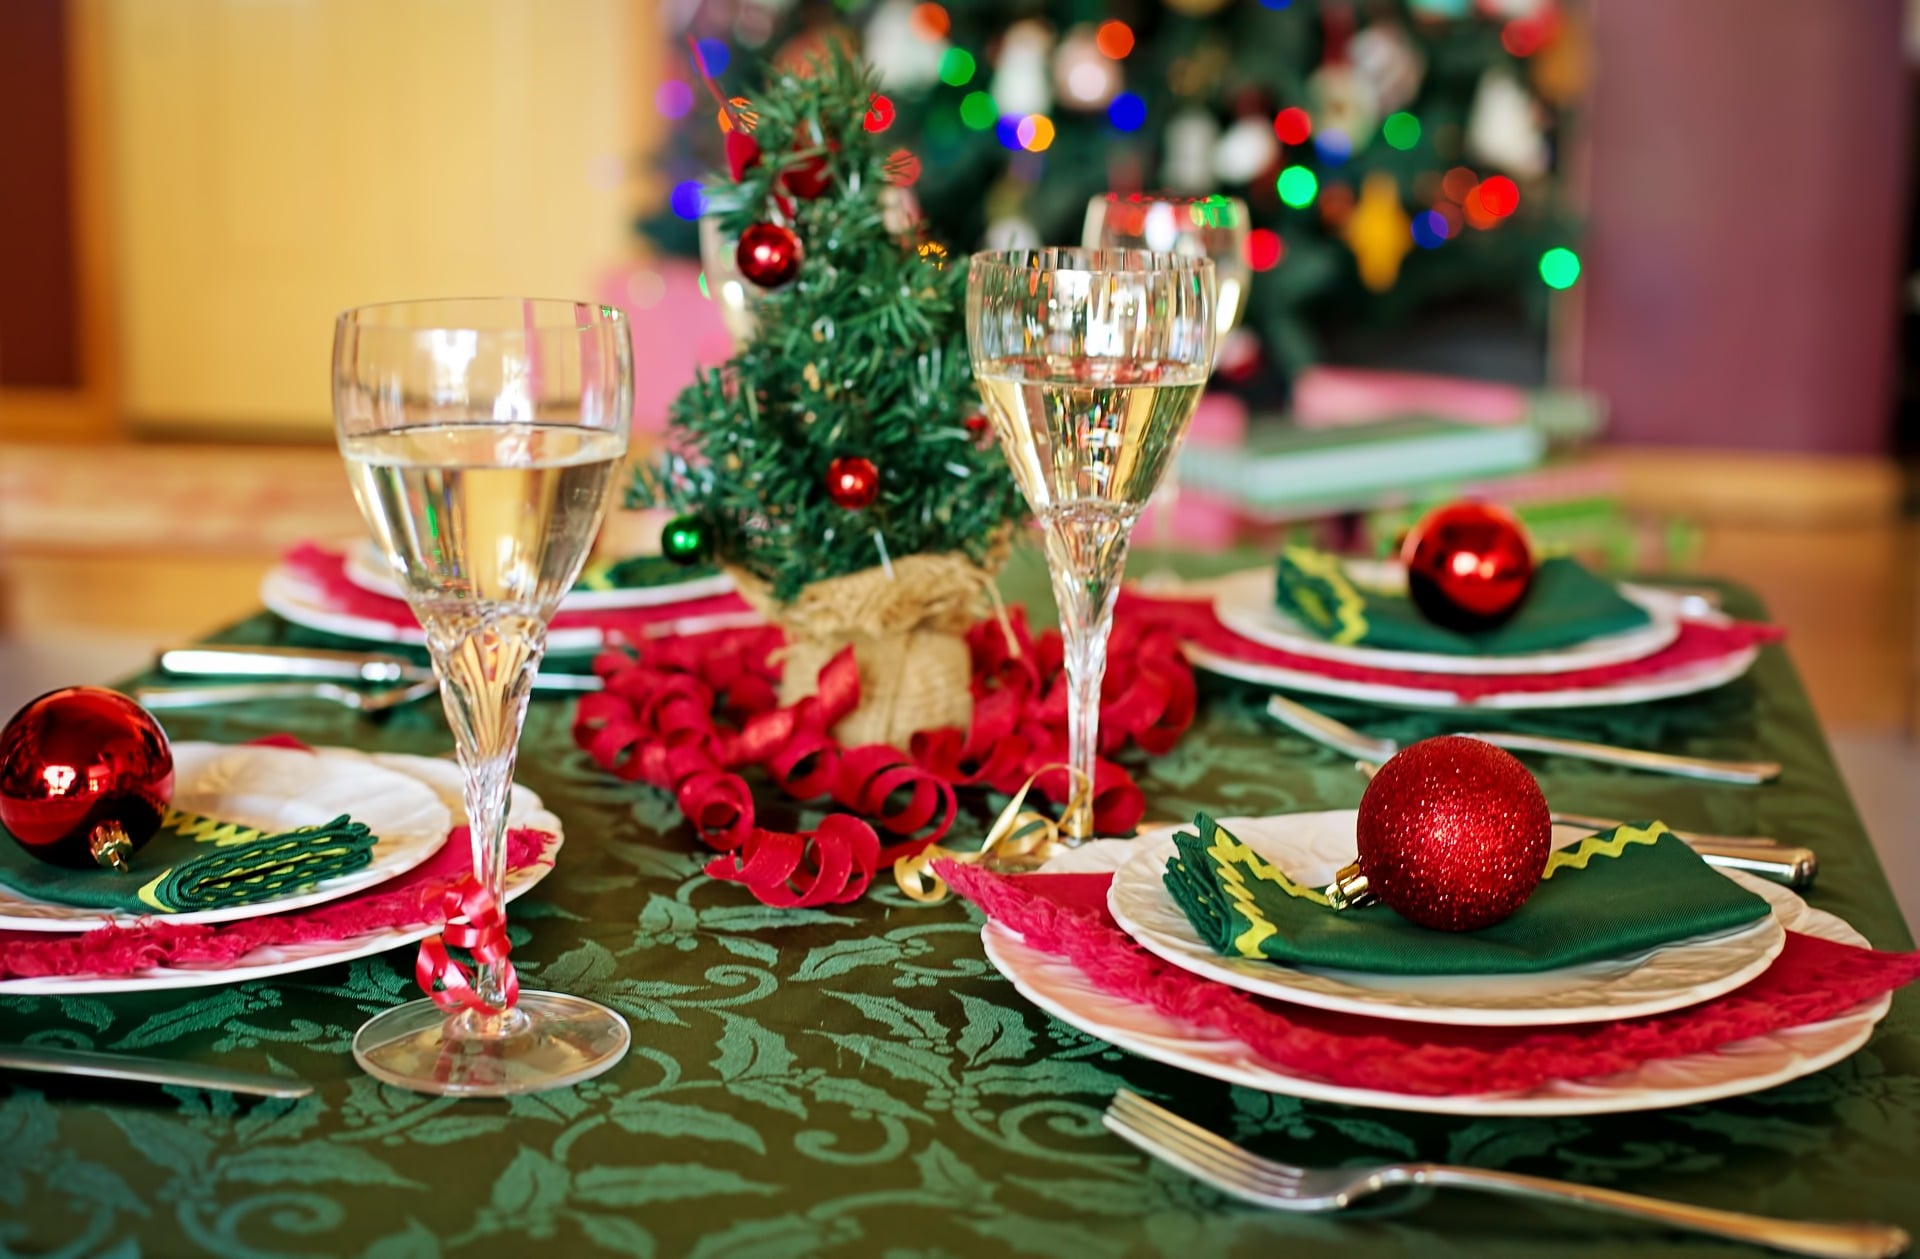 Klasična zeleno-rdeča dekoracija na jedilni mizi z dvema kozarcema penine.